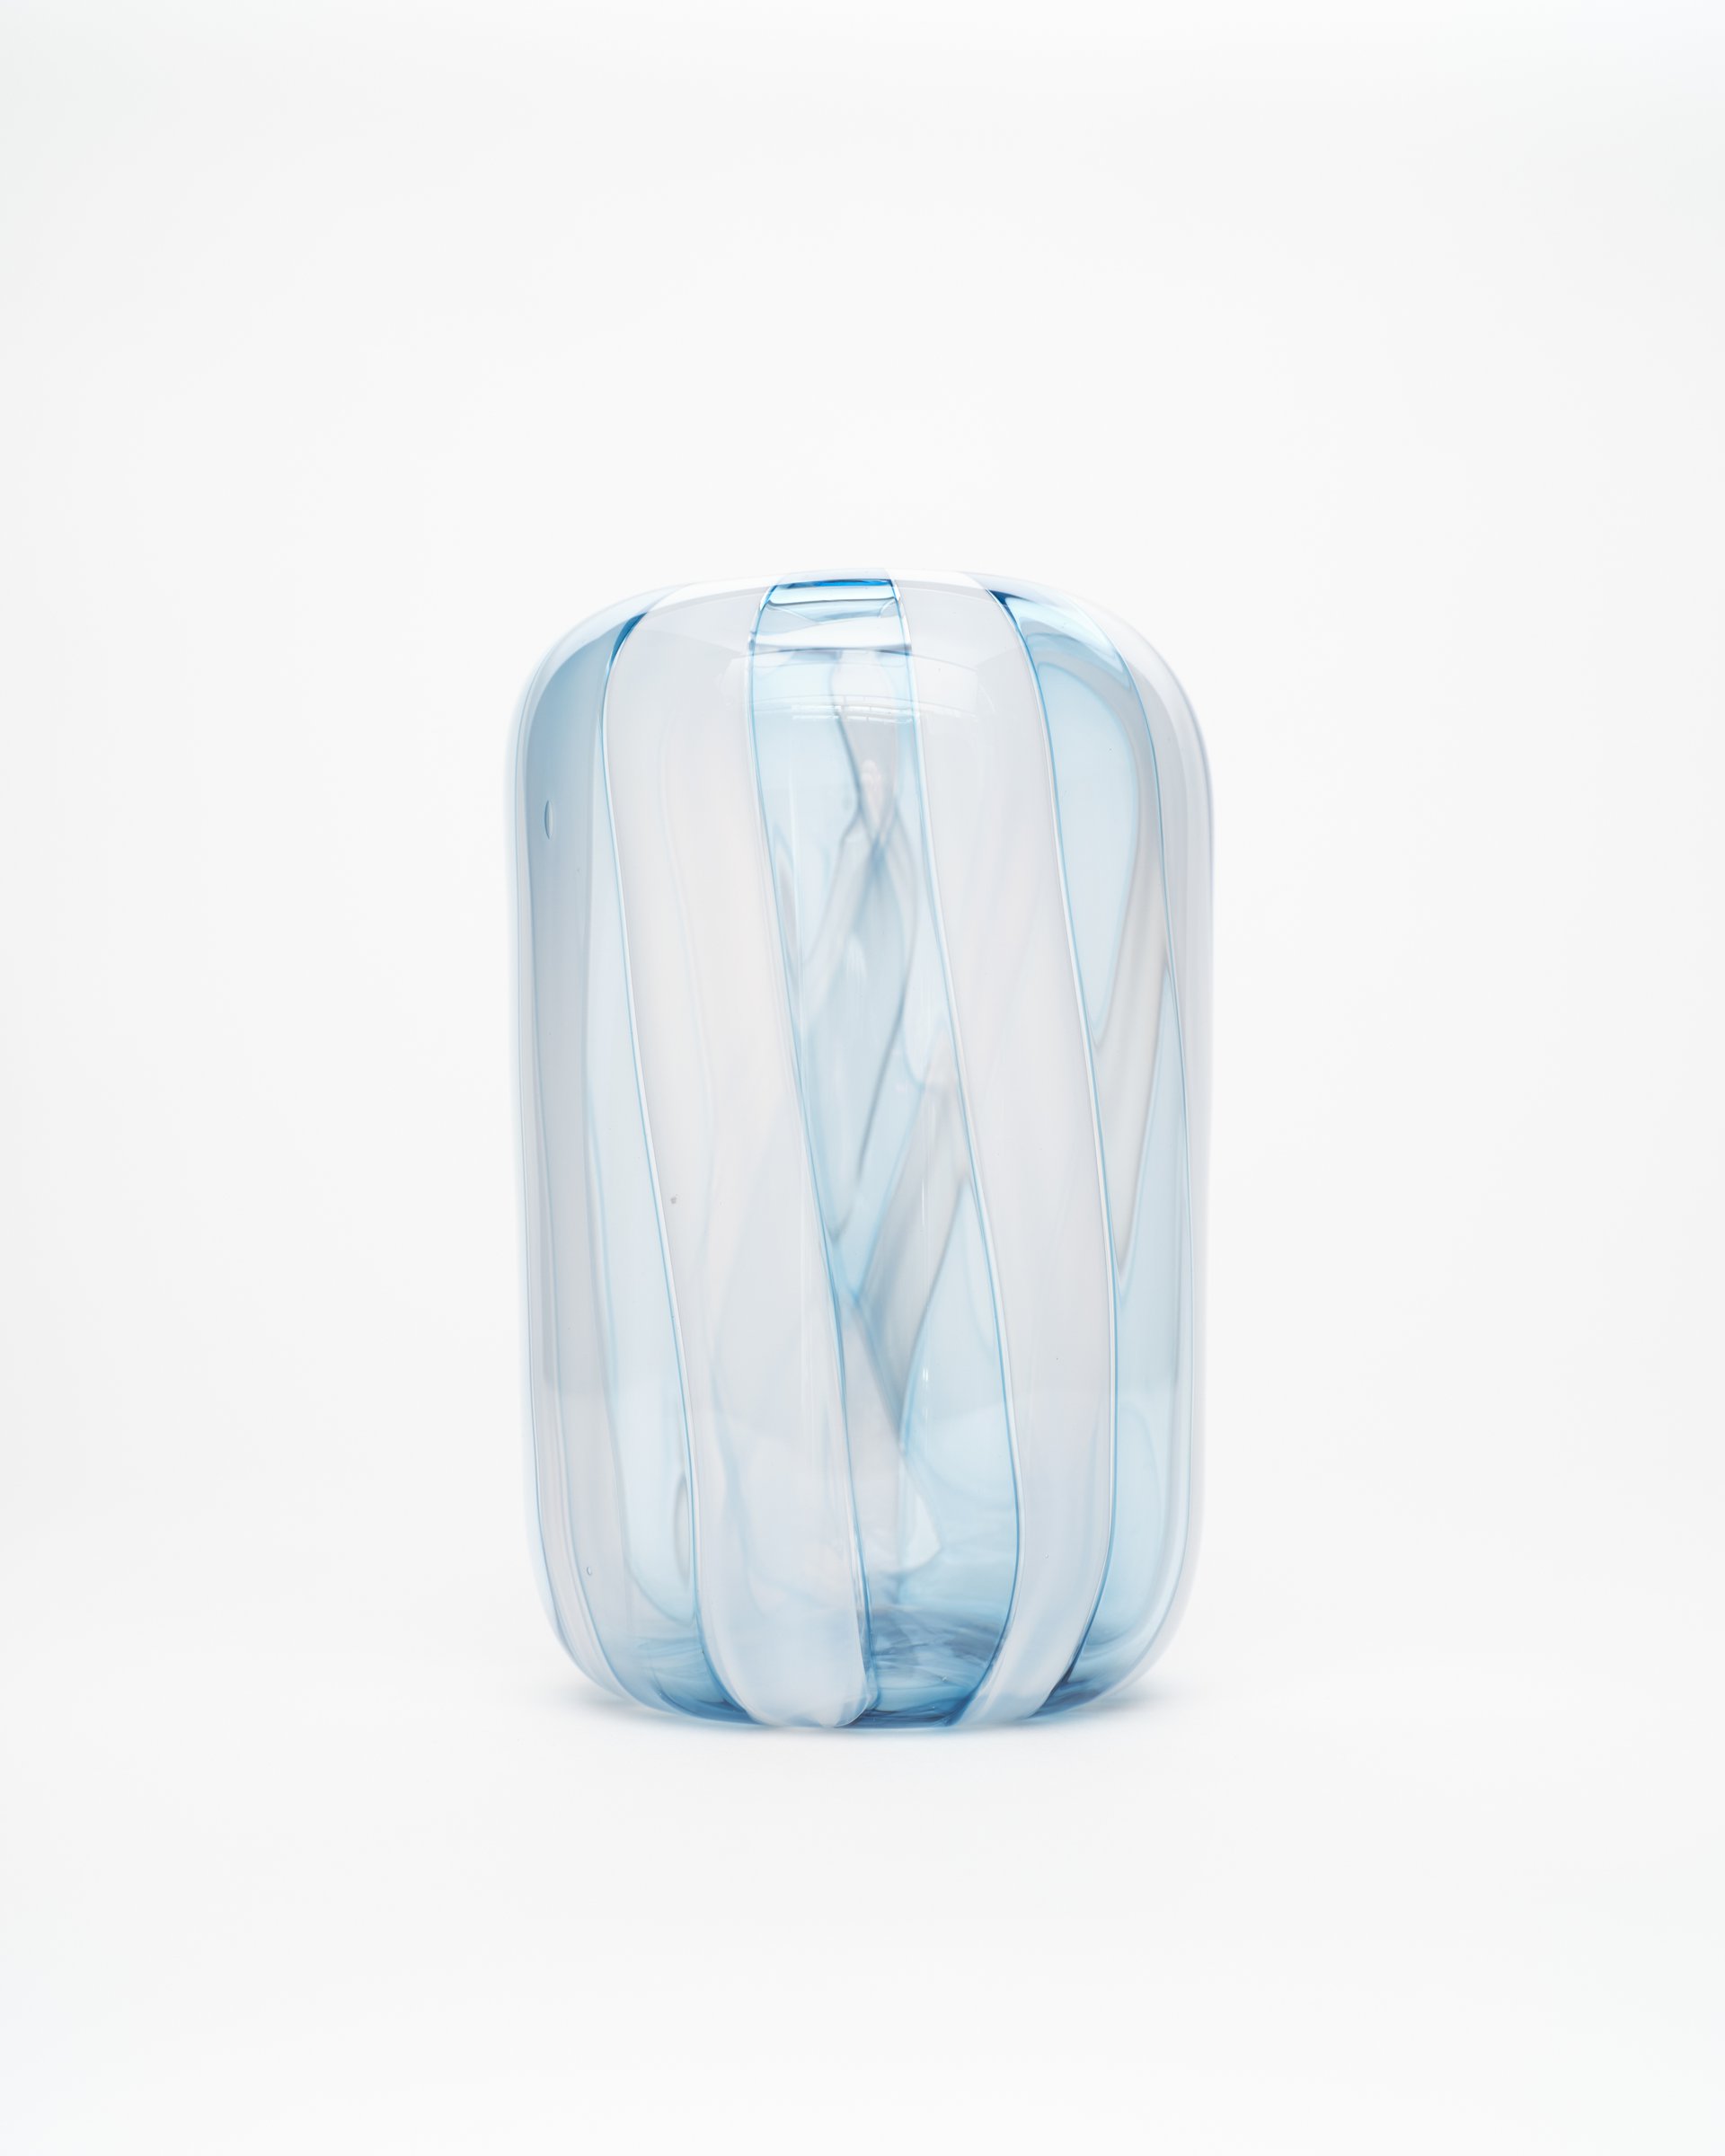 Blue Ice Vase 4